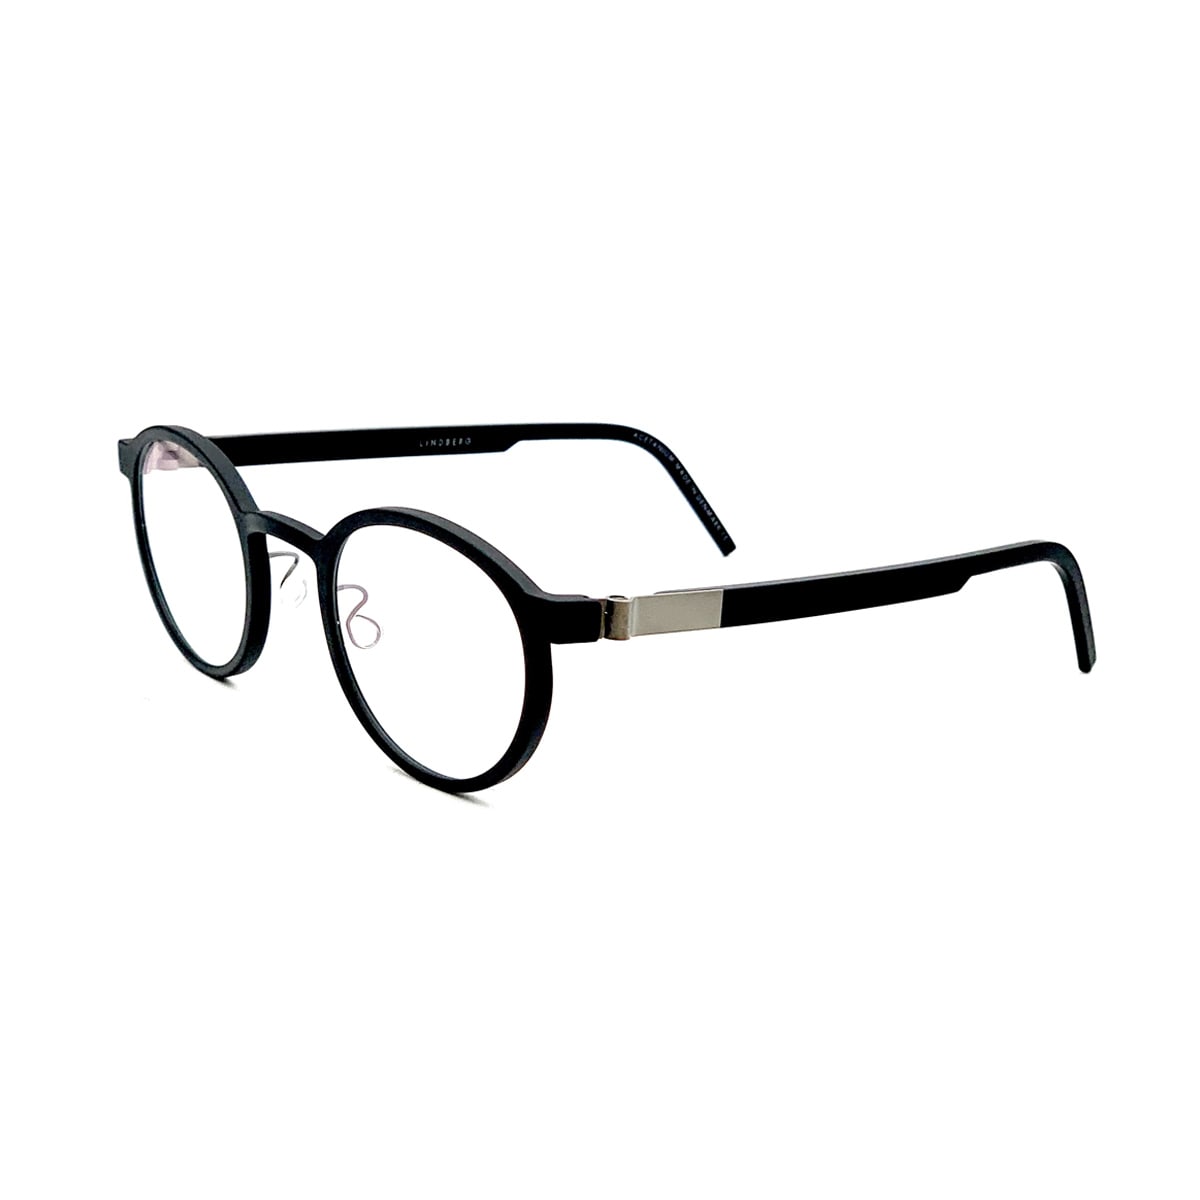 Lindberg Acetanium 1014 Glasses